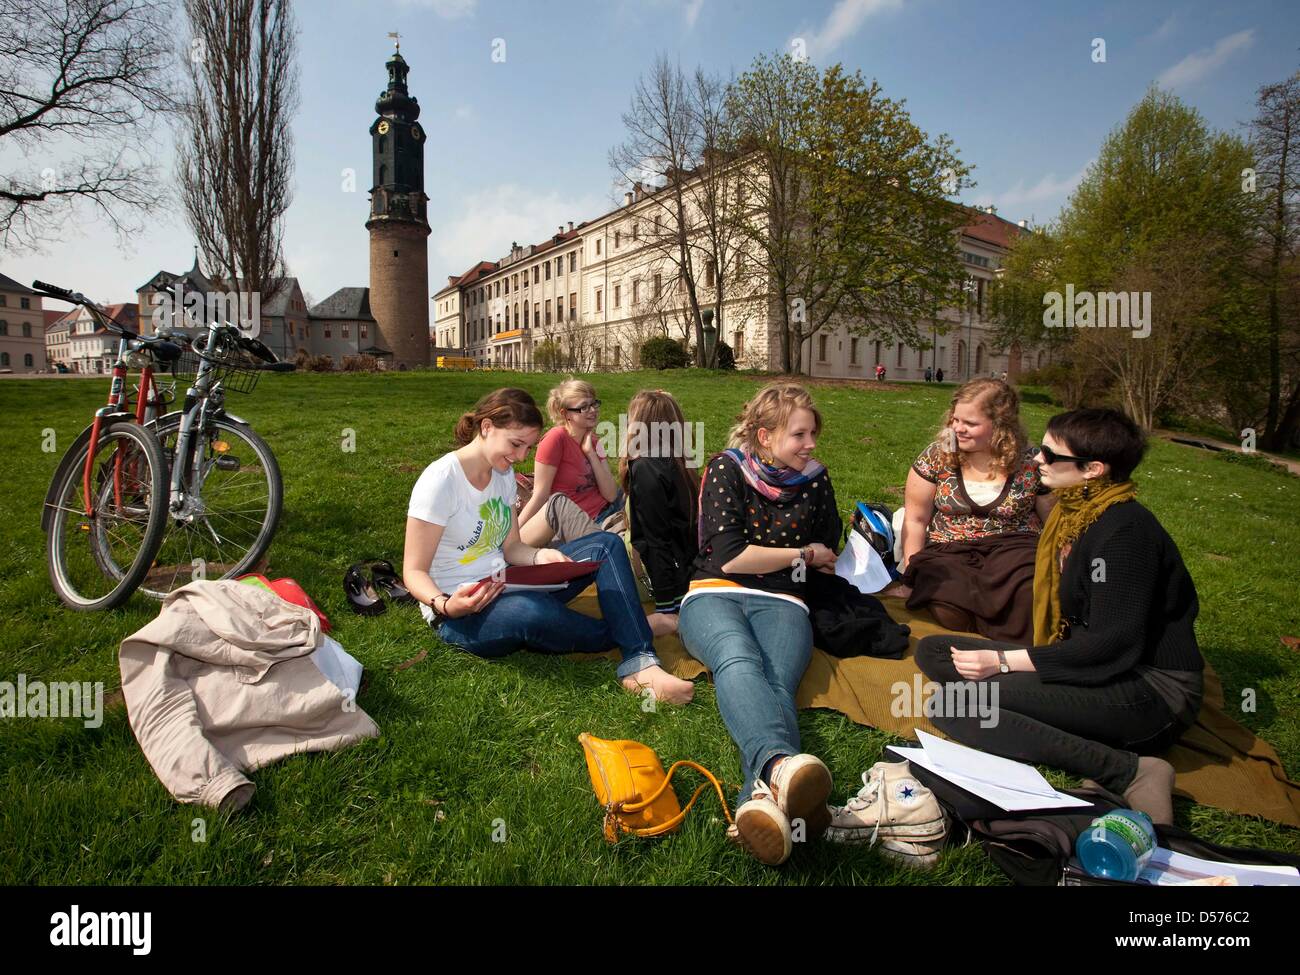 Les étudiants aiment le soleil durant une pause à l'université Bauhaus de Weimar, Allemagne, 19 avril 2010. Photo : Michael Reichel Banque D'Images